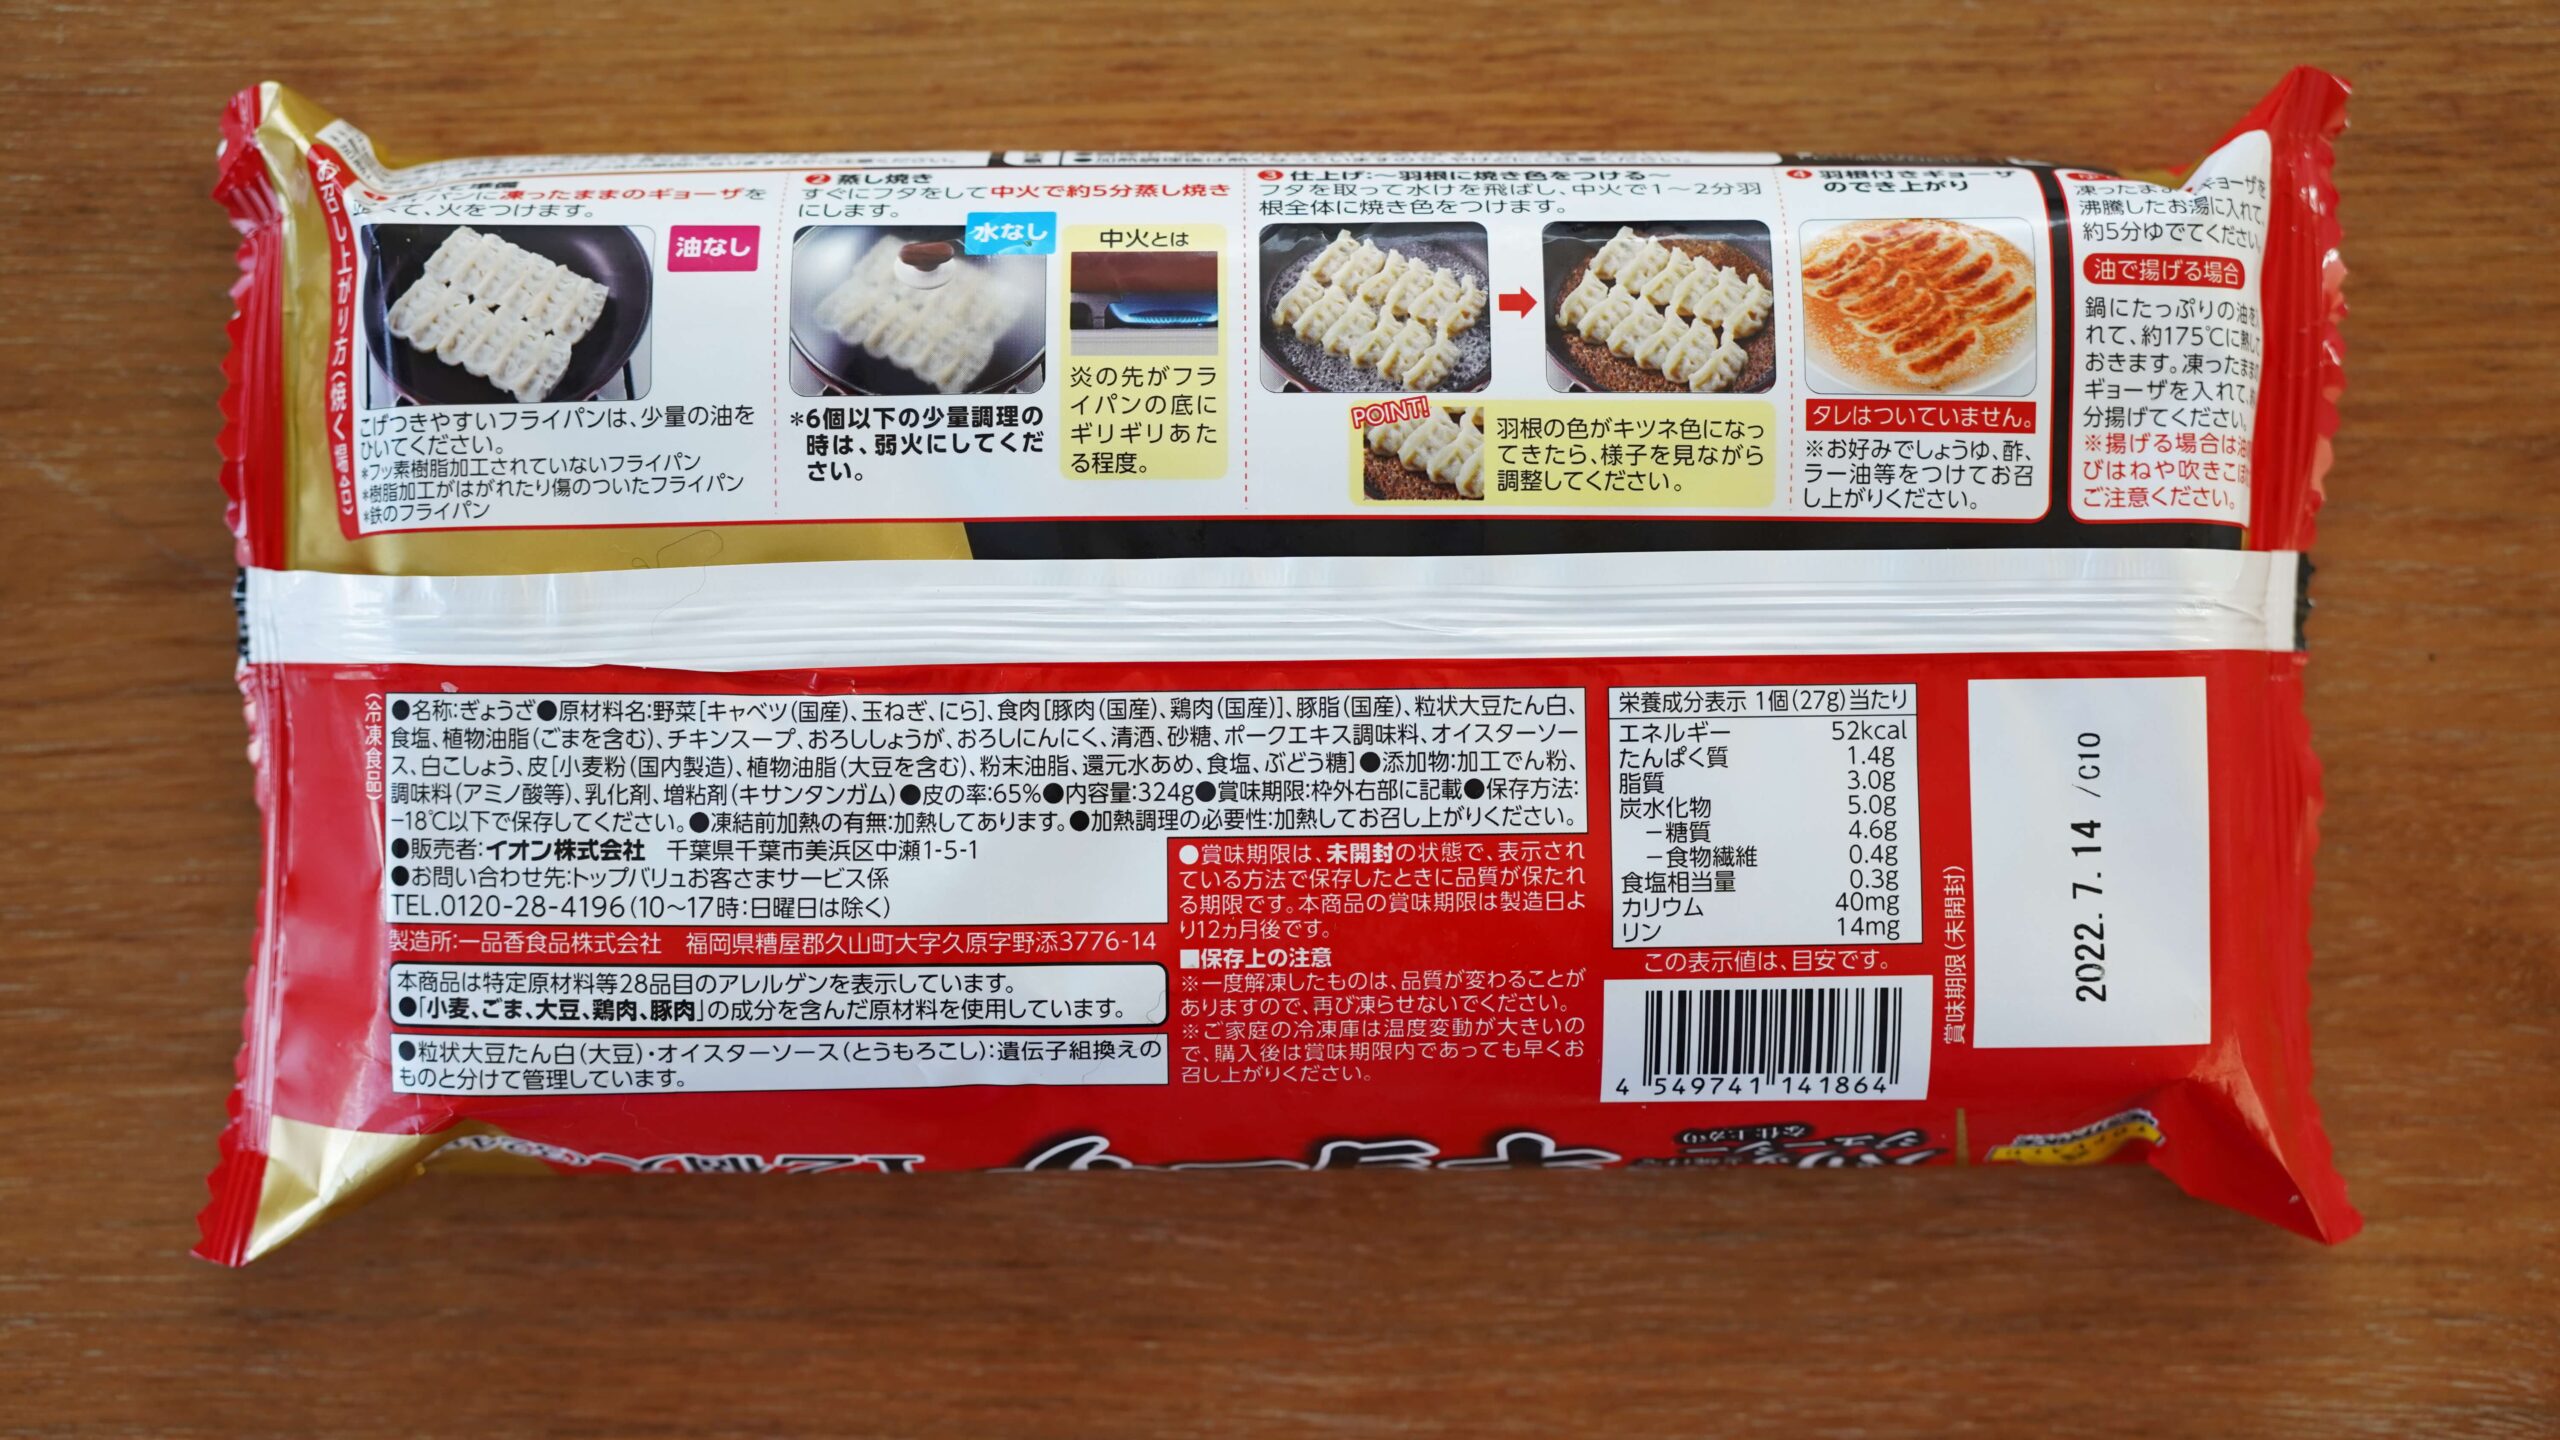 イオン・トップバリュ（TOPVALU）「ギョーザ」の冷凍食品のパッケージ裏面の写真